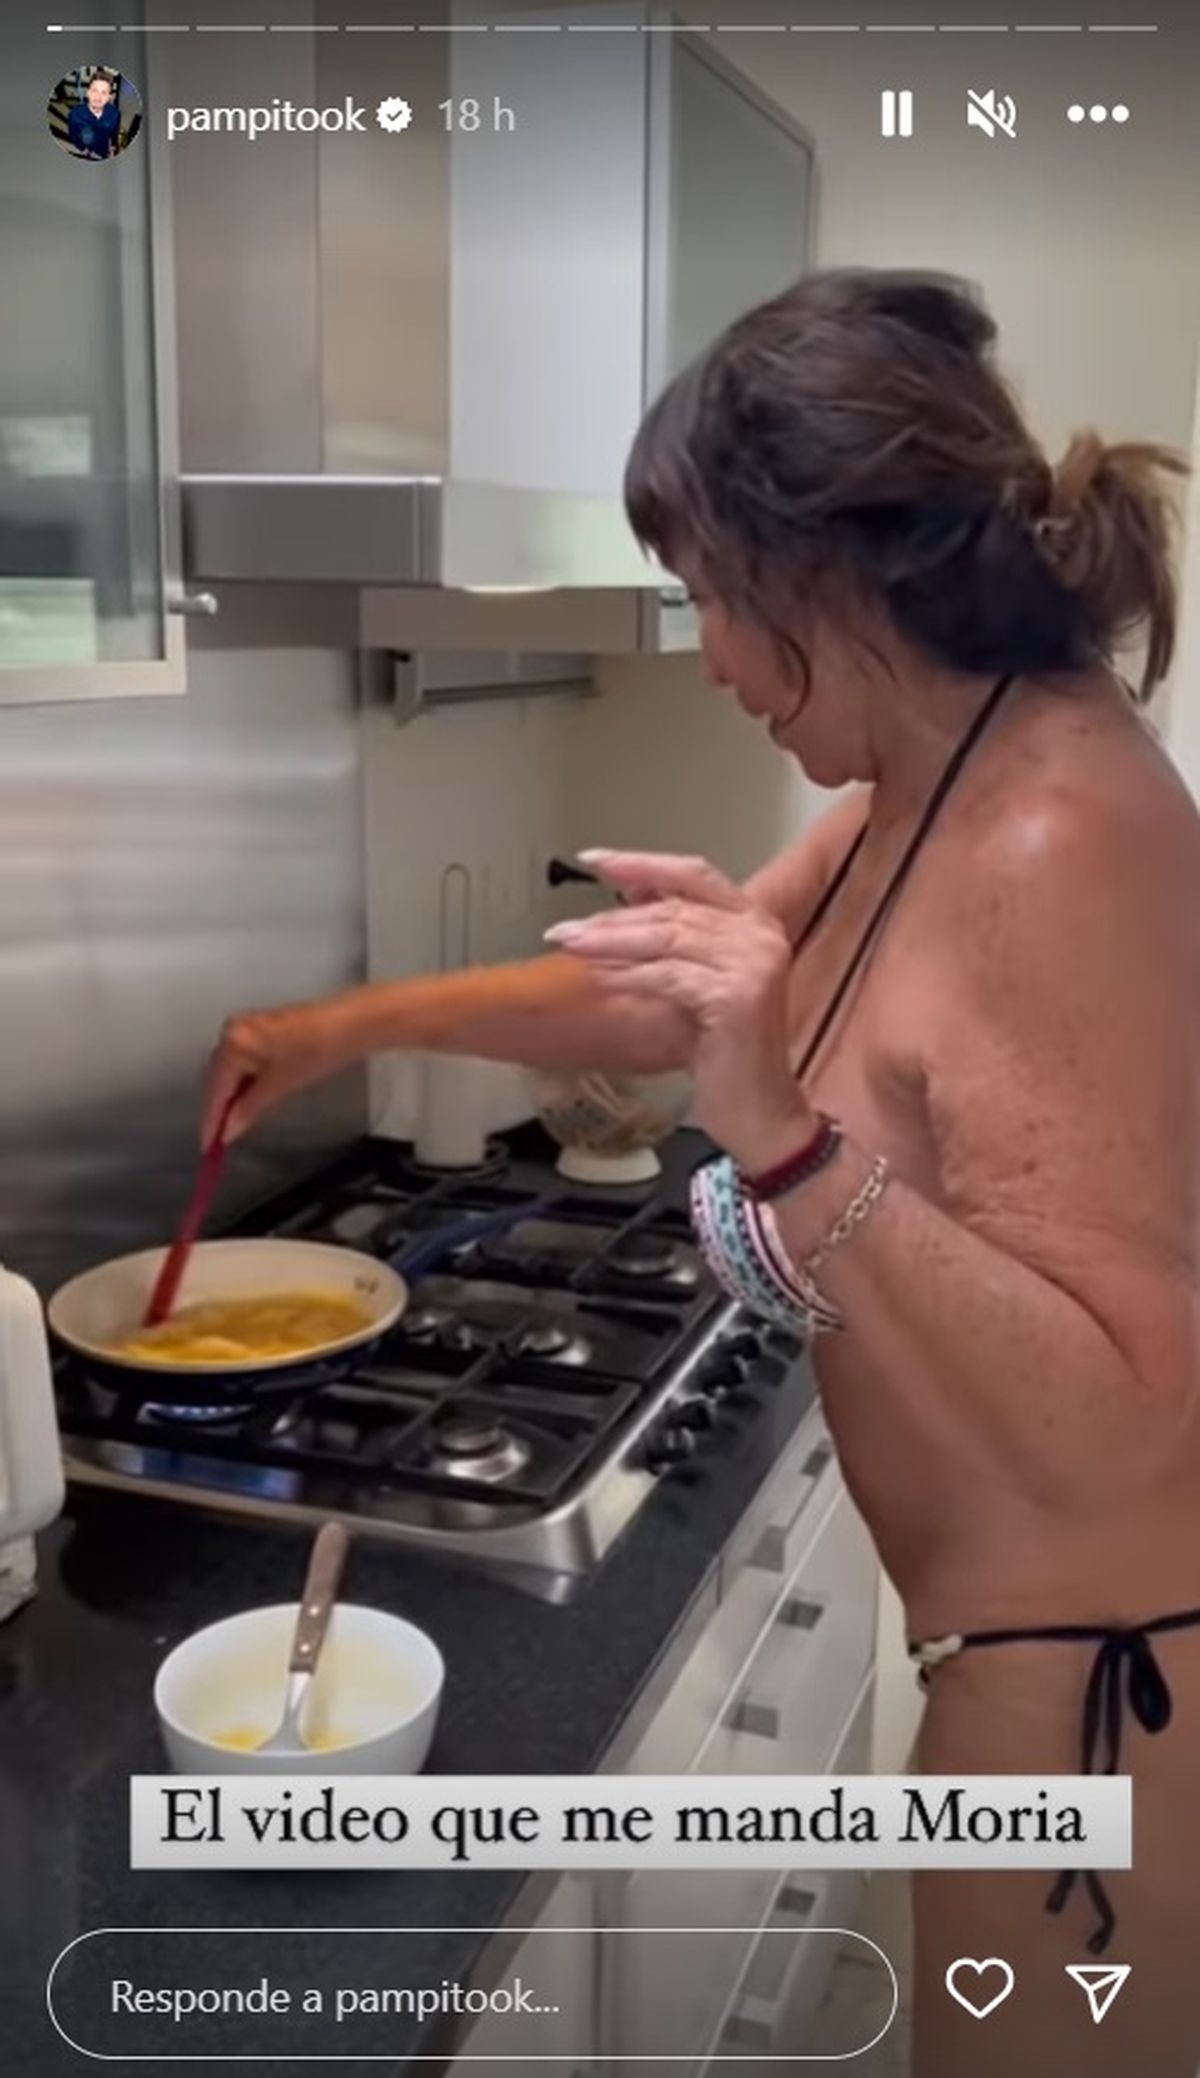 El video íntimo de Moria Casán cocinando huevos revueltos en bikini: "El video que me manda Moria"